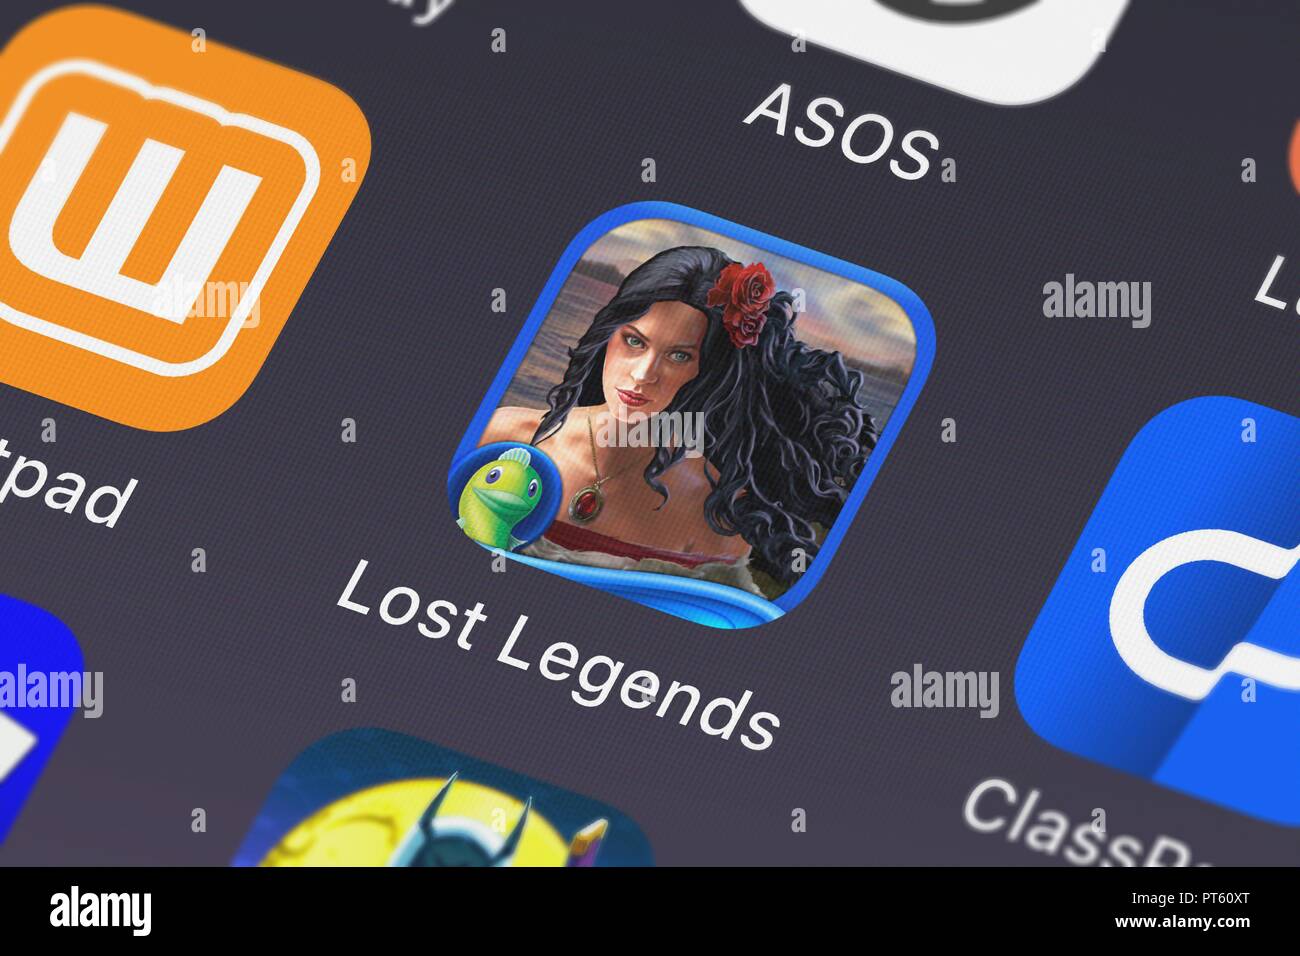 Gameboost.Org/Mobilelegends Mobile Legends Hack November New 2019